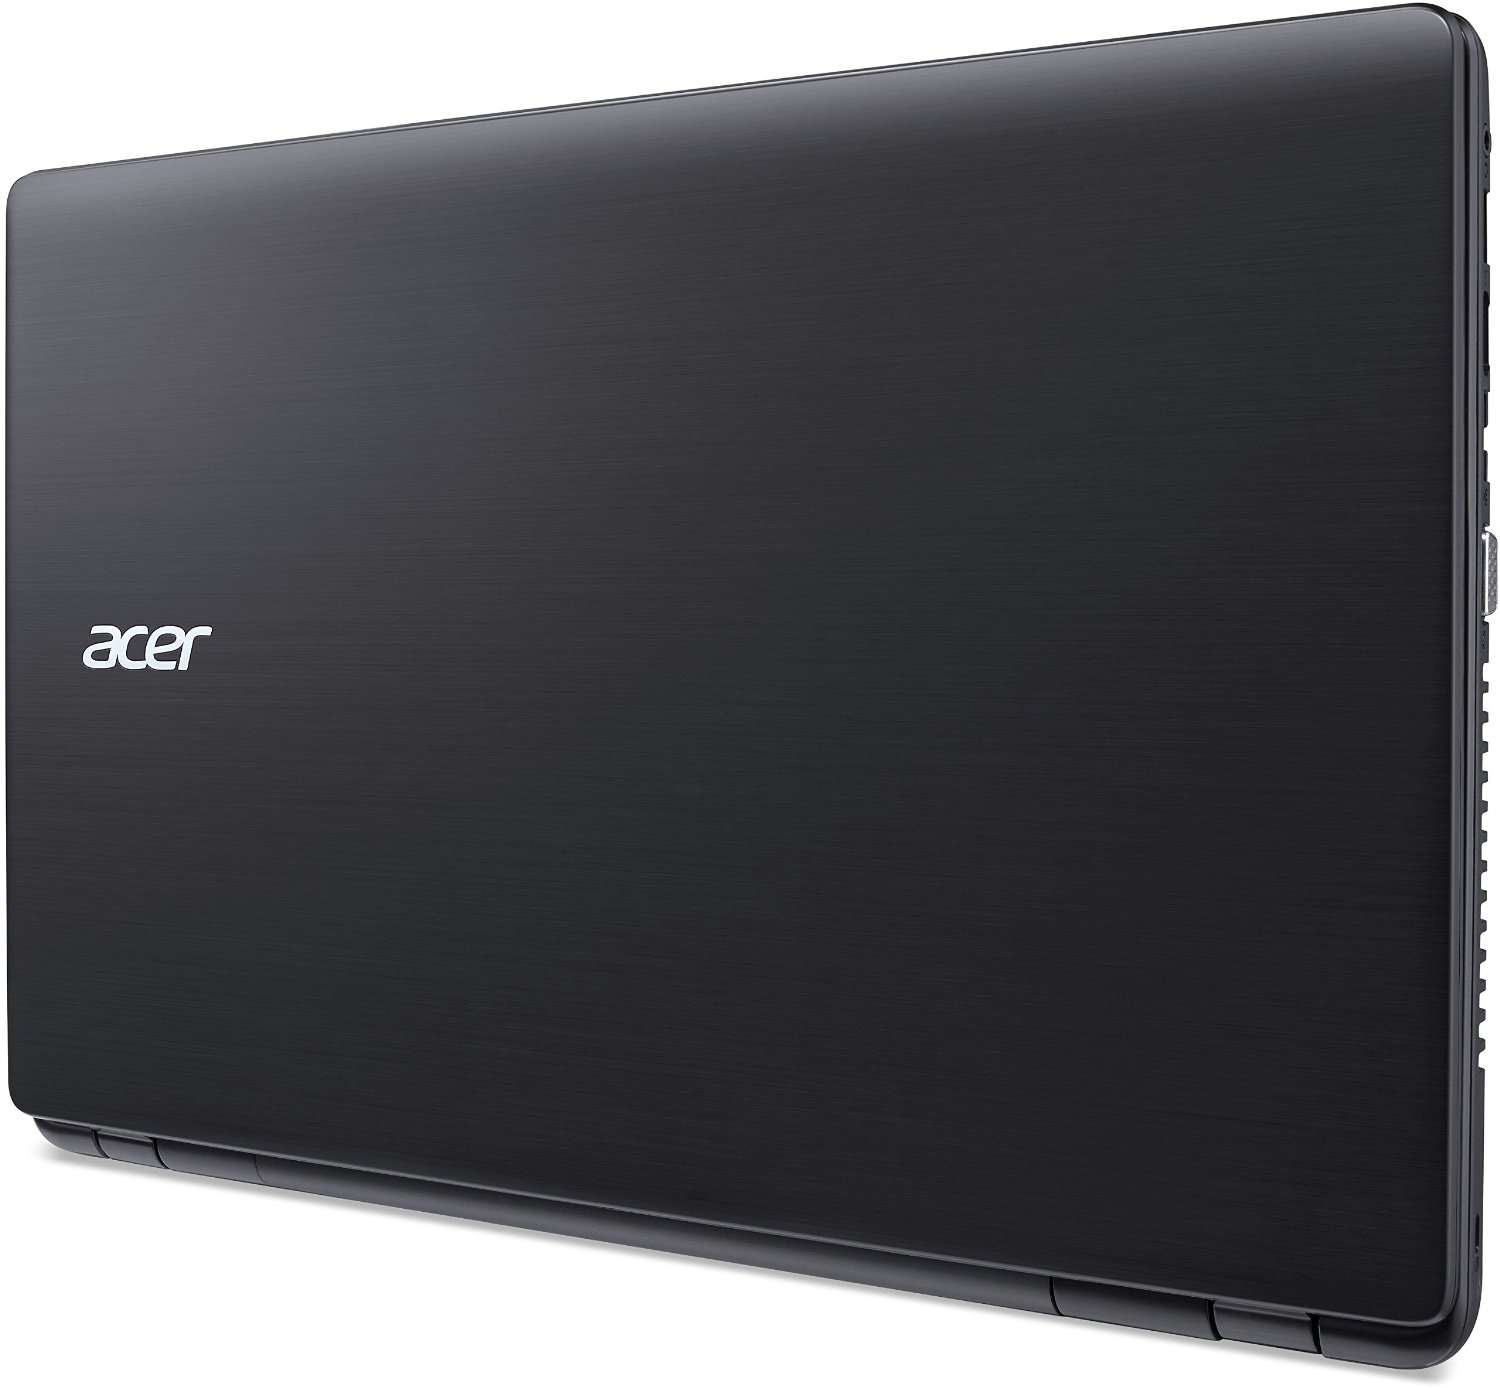 Acer Aspire E5-572G-50FB